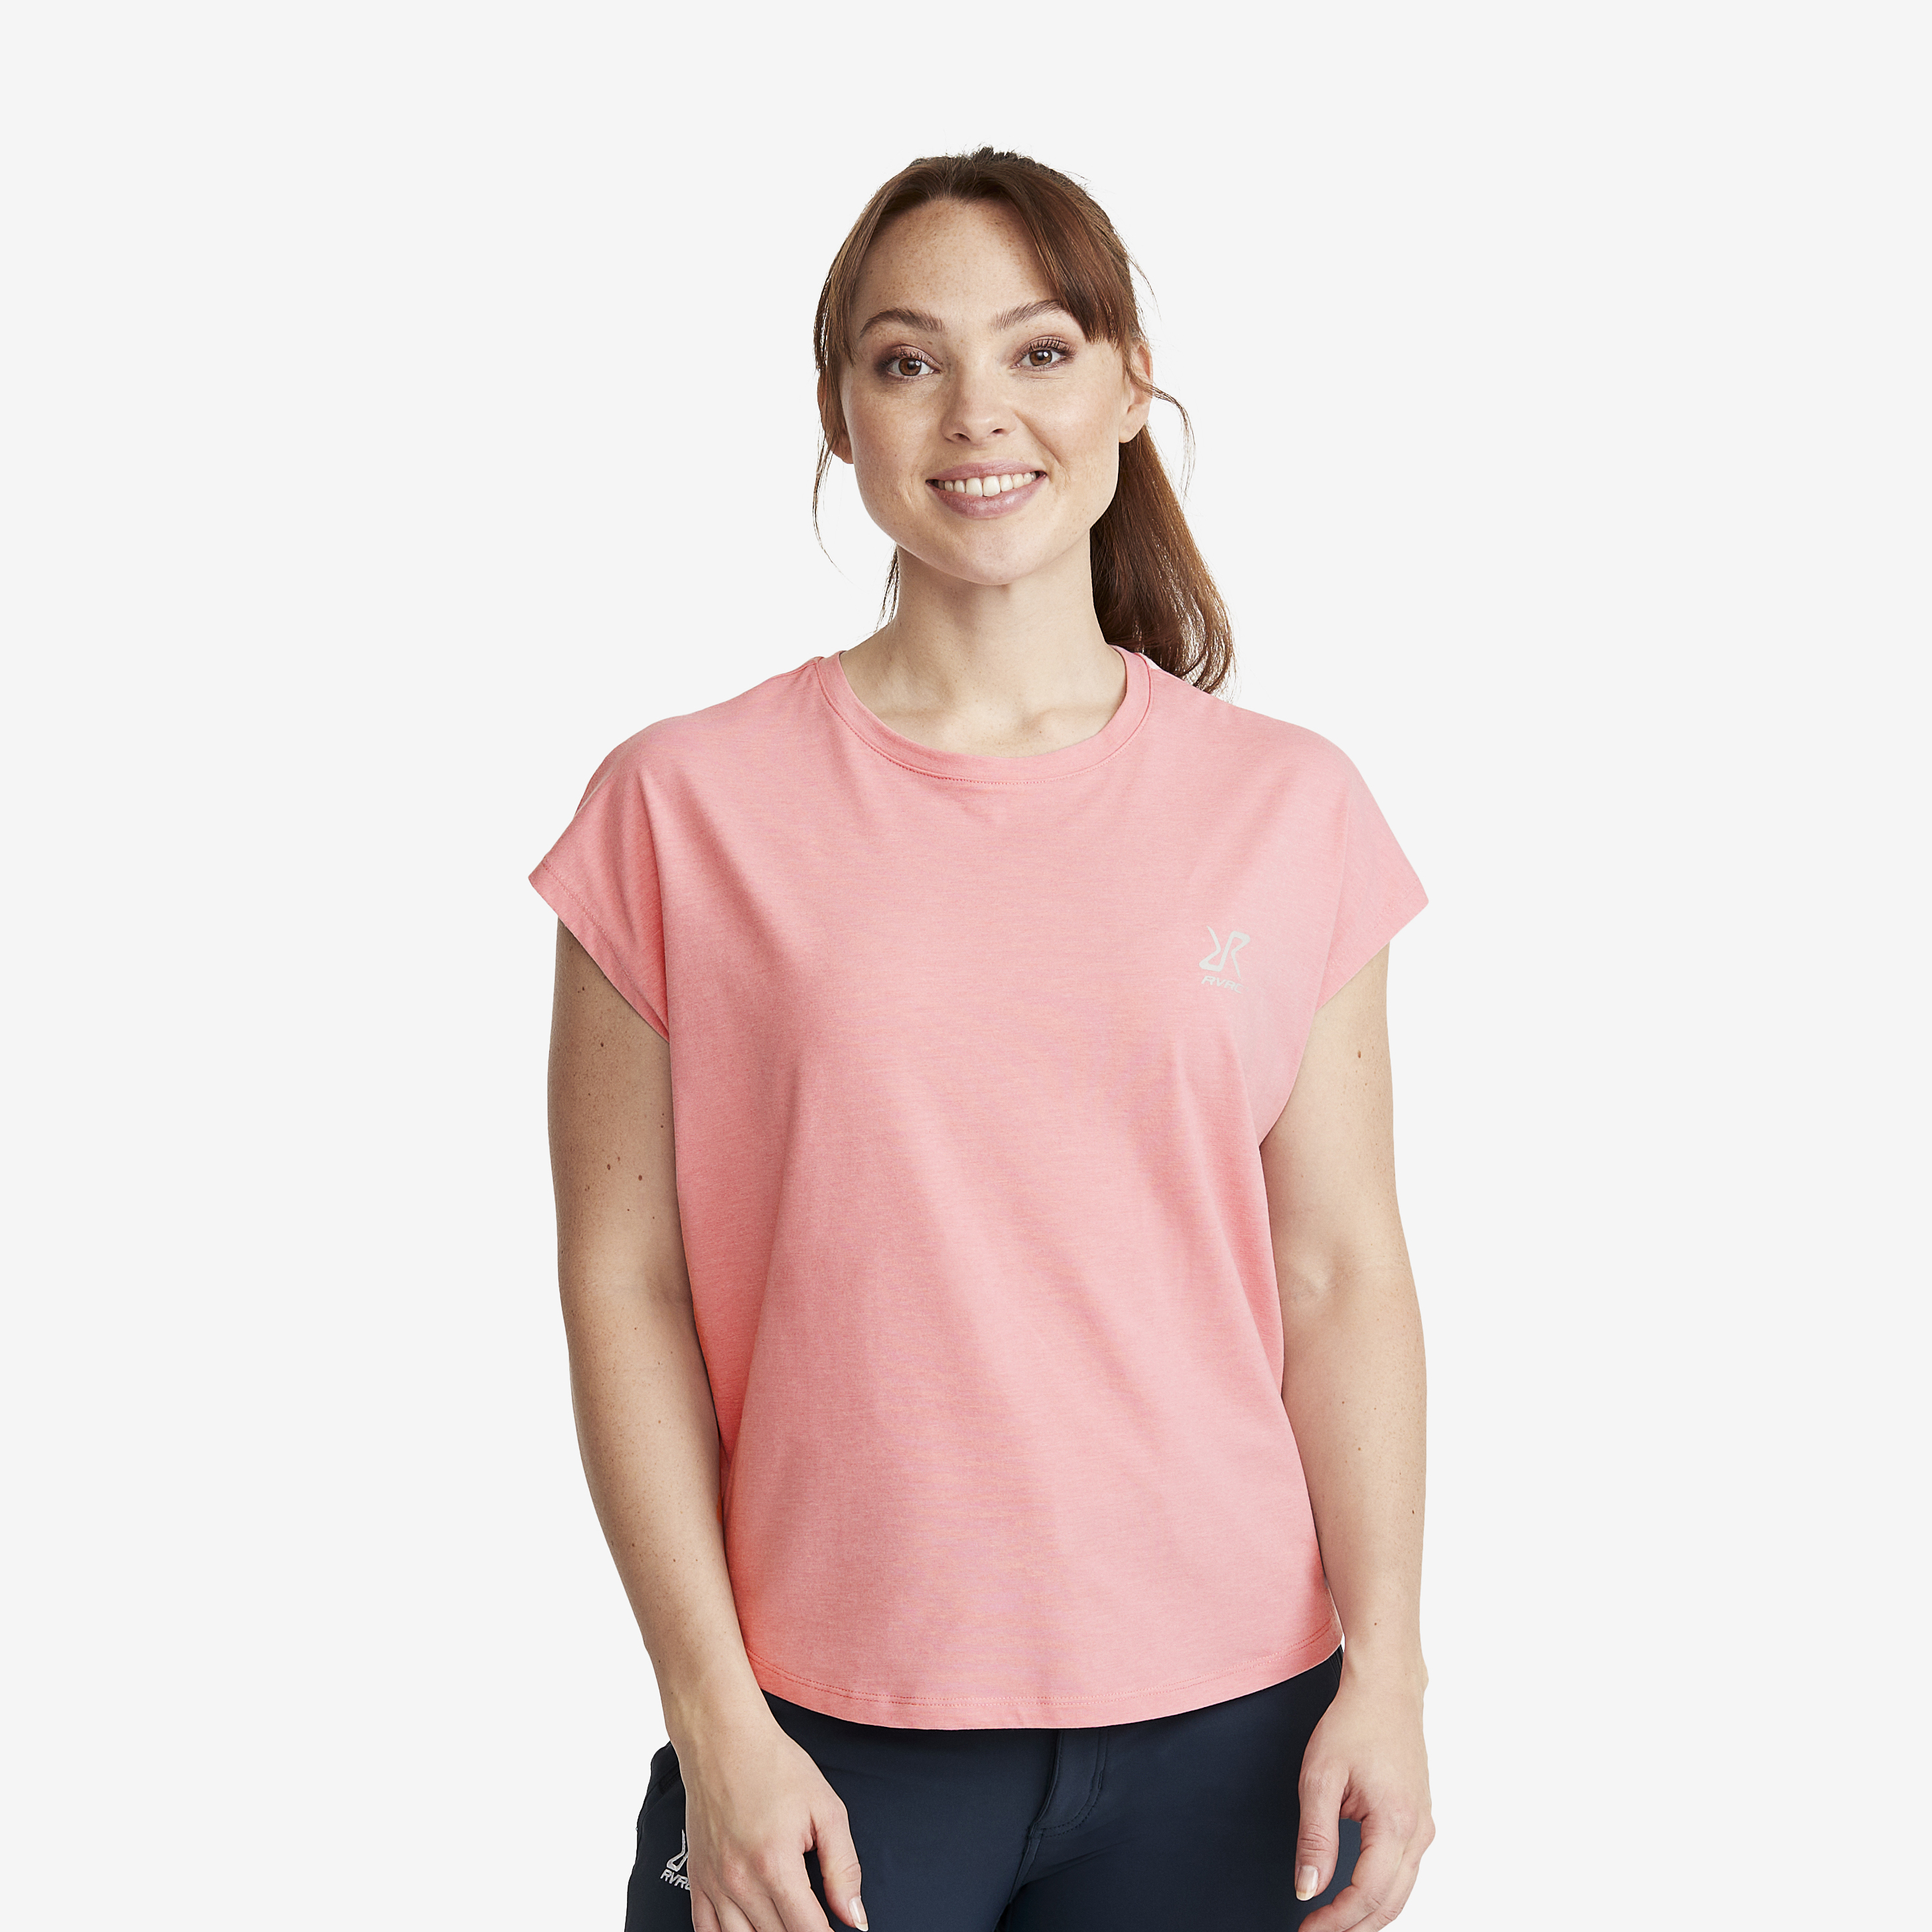 Soft Sleeveless Top - Dam - Dusty Pink, Storlek:2XL - Dam > Tröjor > T-shirts